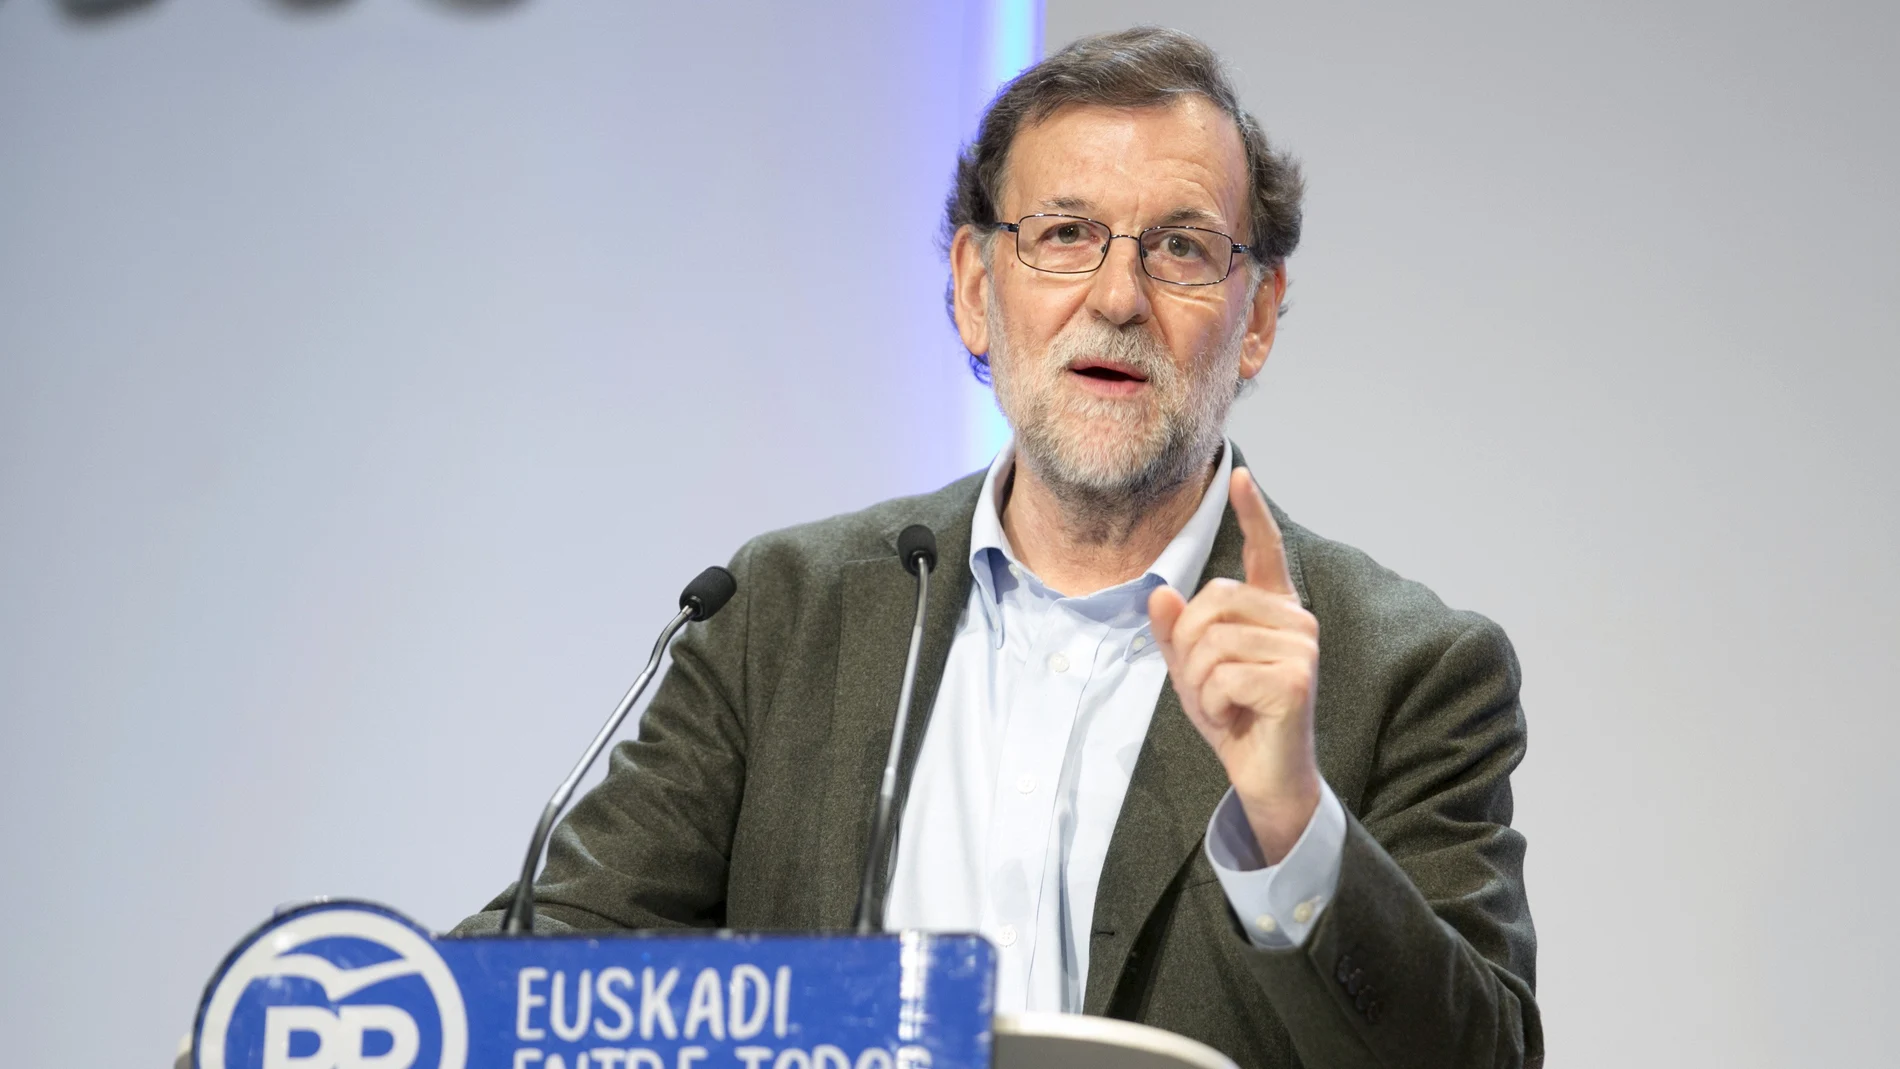  Mariano Rajoy durante su intervención en la clausura del congreso del PP vasco celebrado en Vitoria